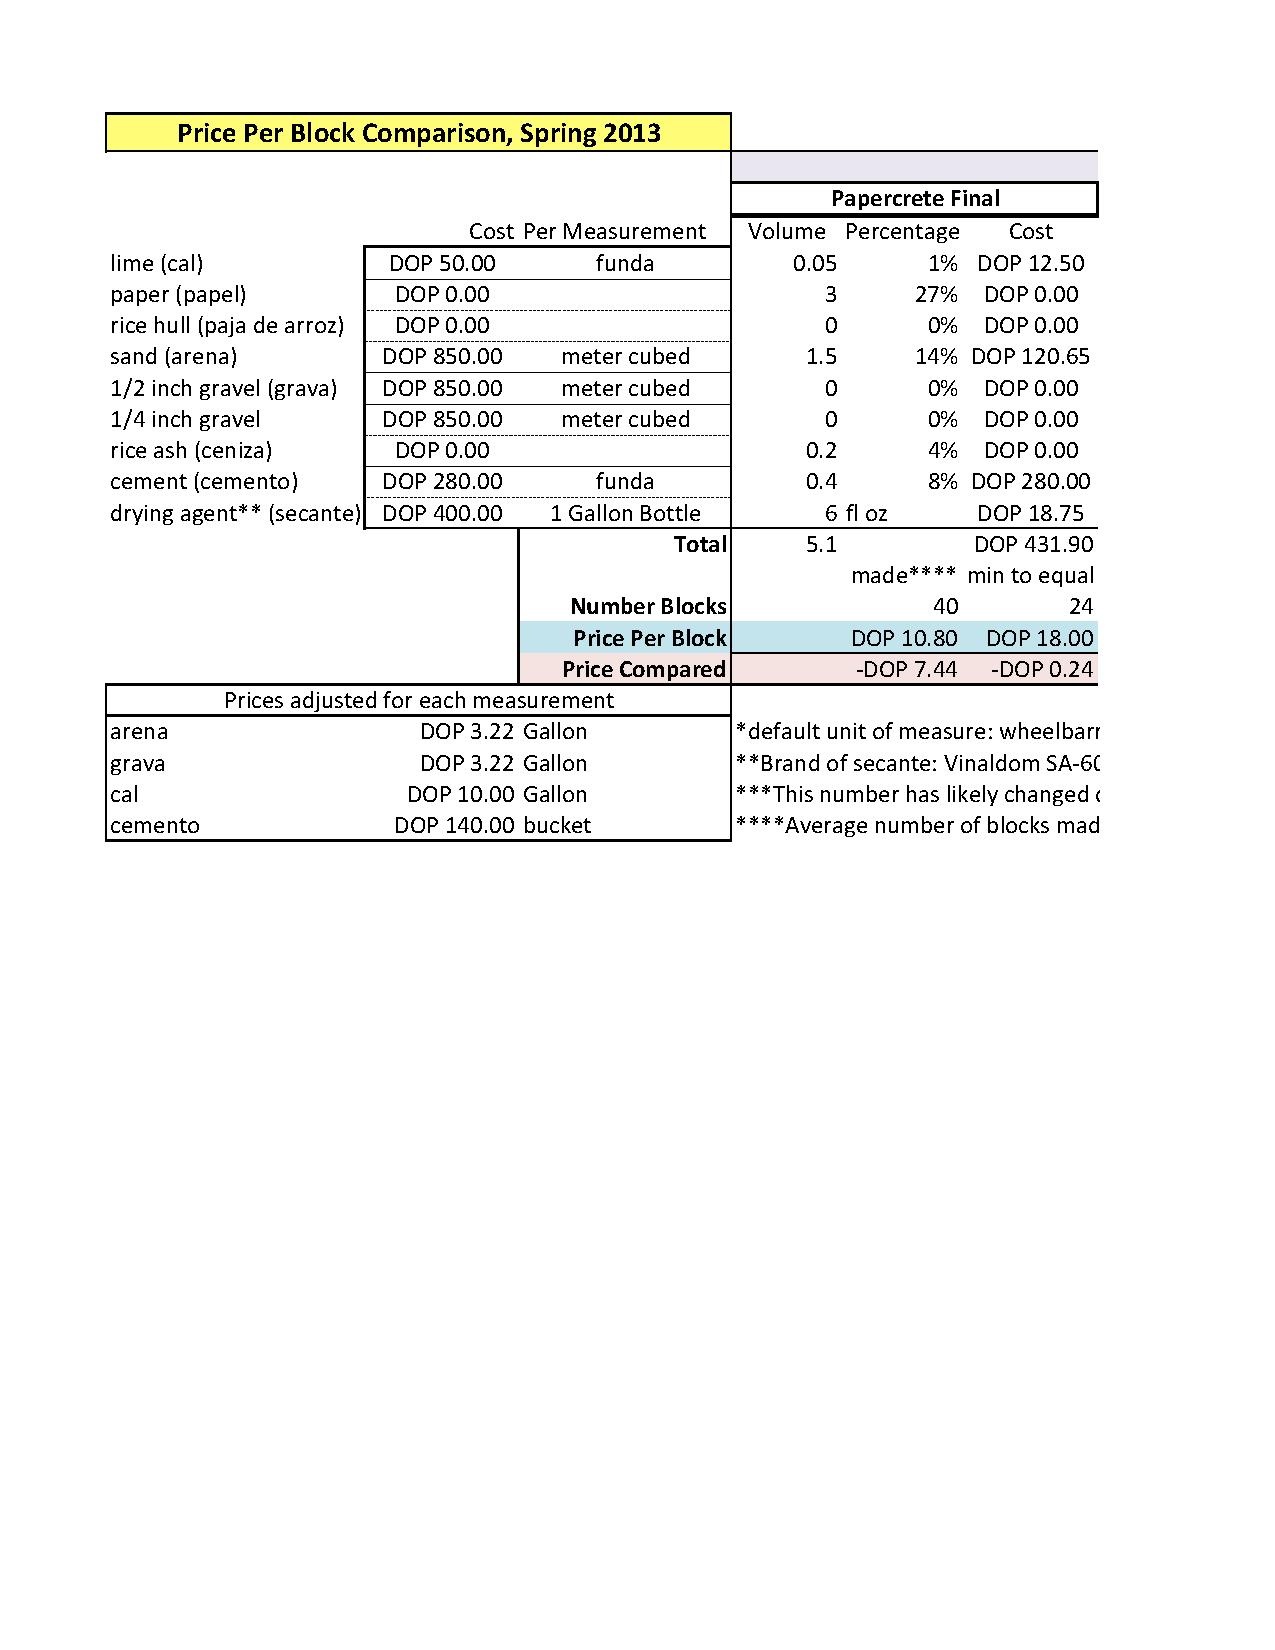 Fibercrete Blocks Price Comparison 2013.pdf